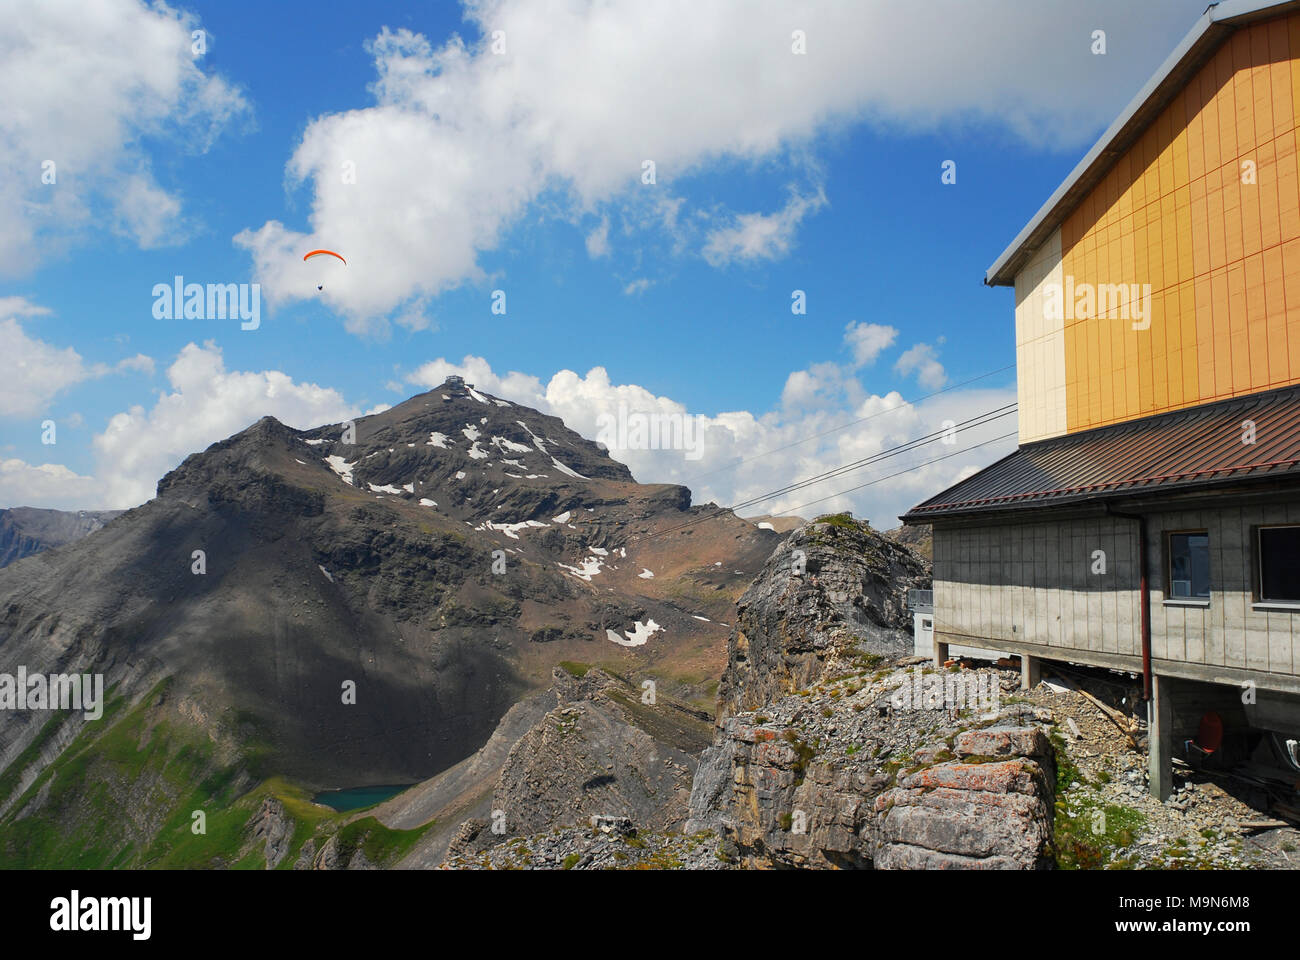 La montagne de Birg Schilthorn gare du téléphérique, Oberland Bernois, Suisse Banque D'Images